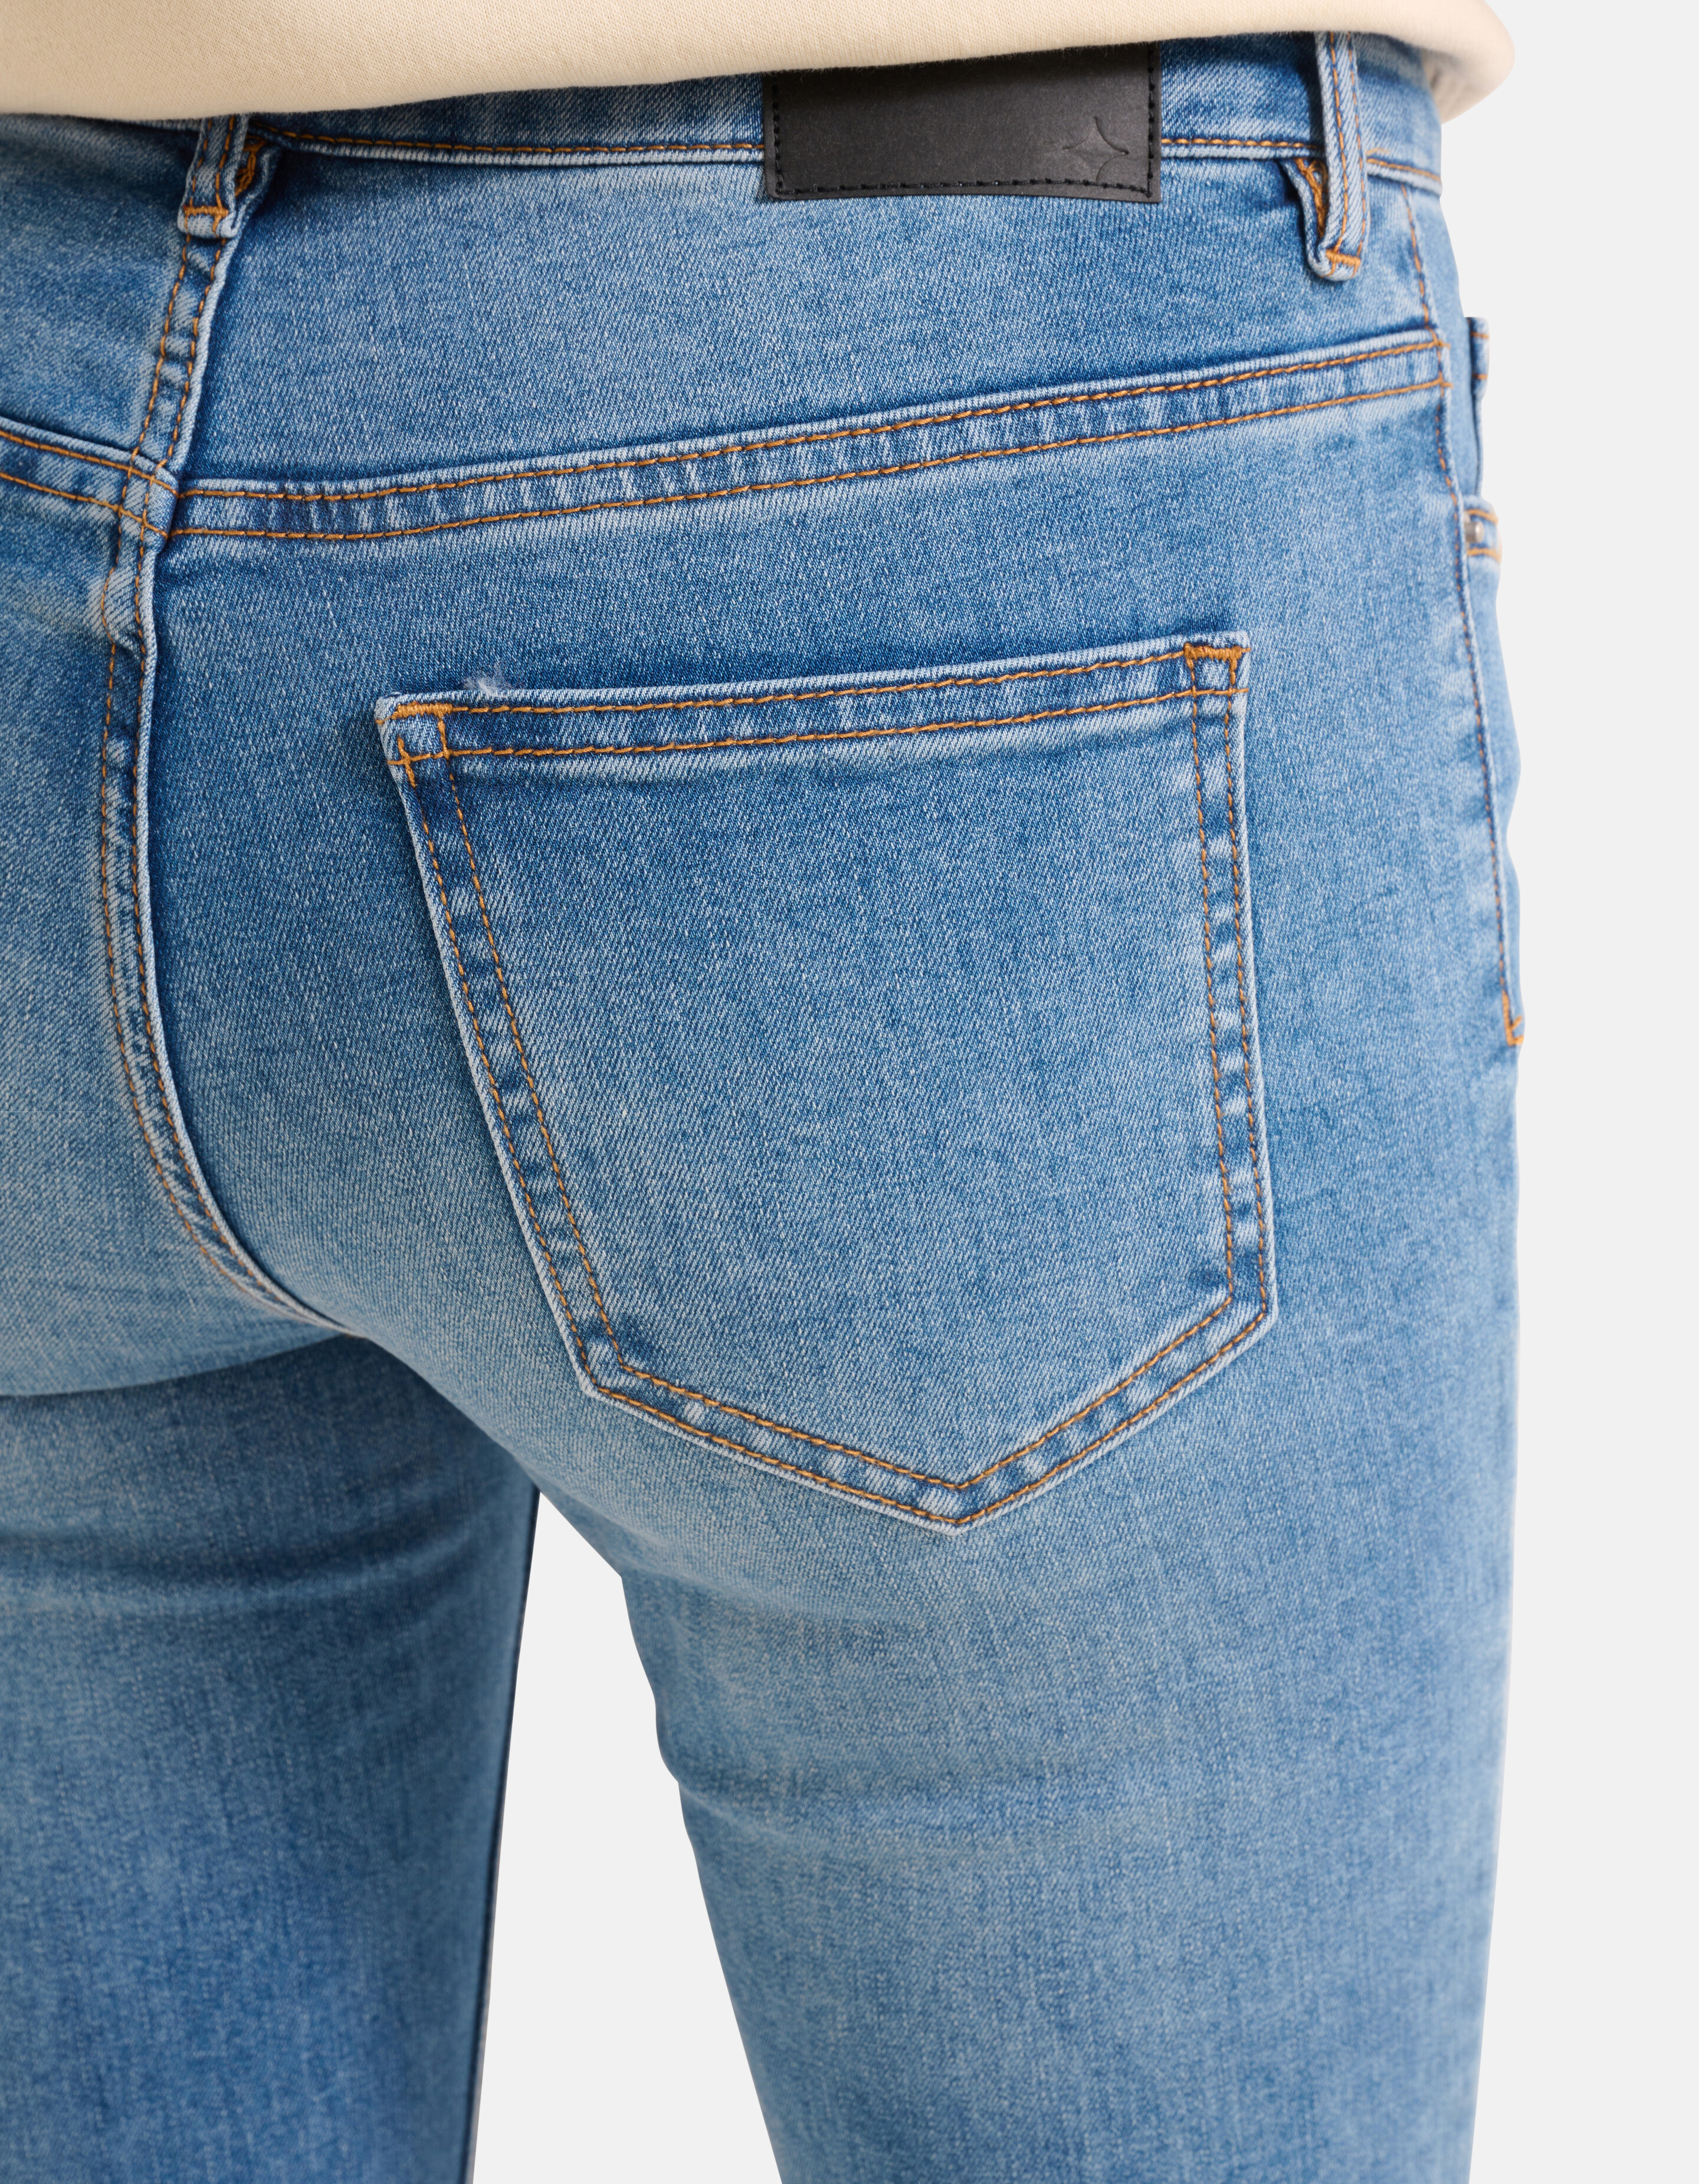 Skinny Jeans Mediumstone L30 SHOEBY WOMEN